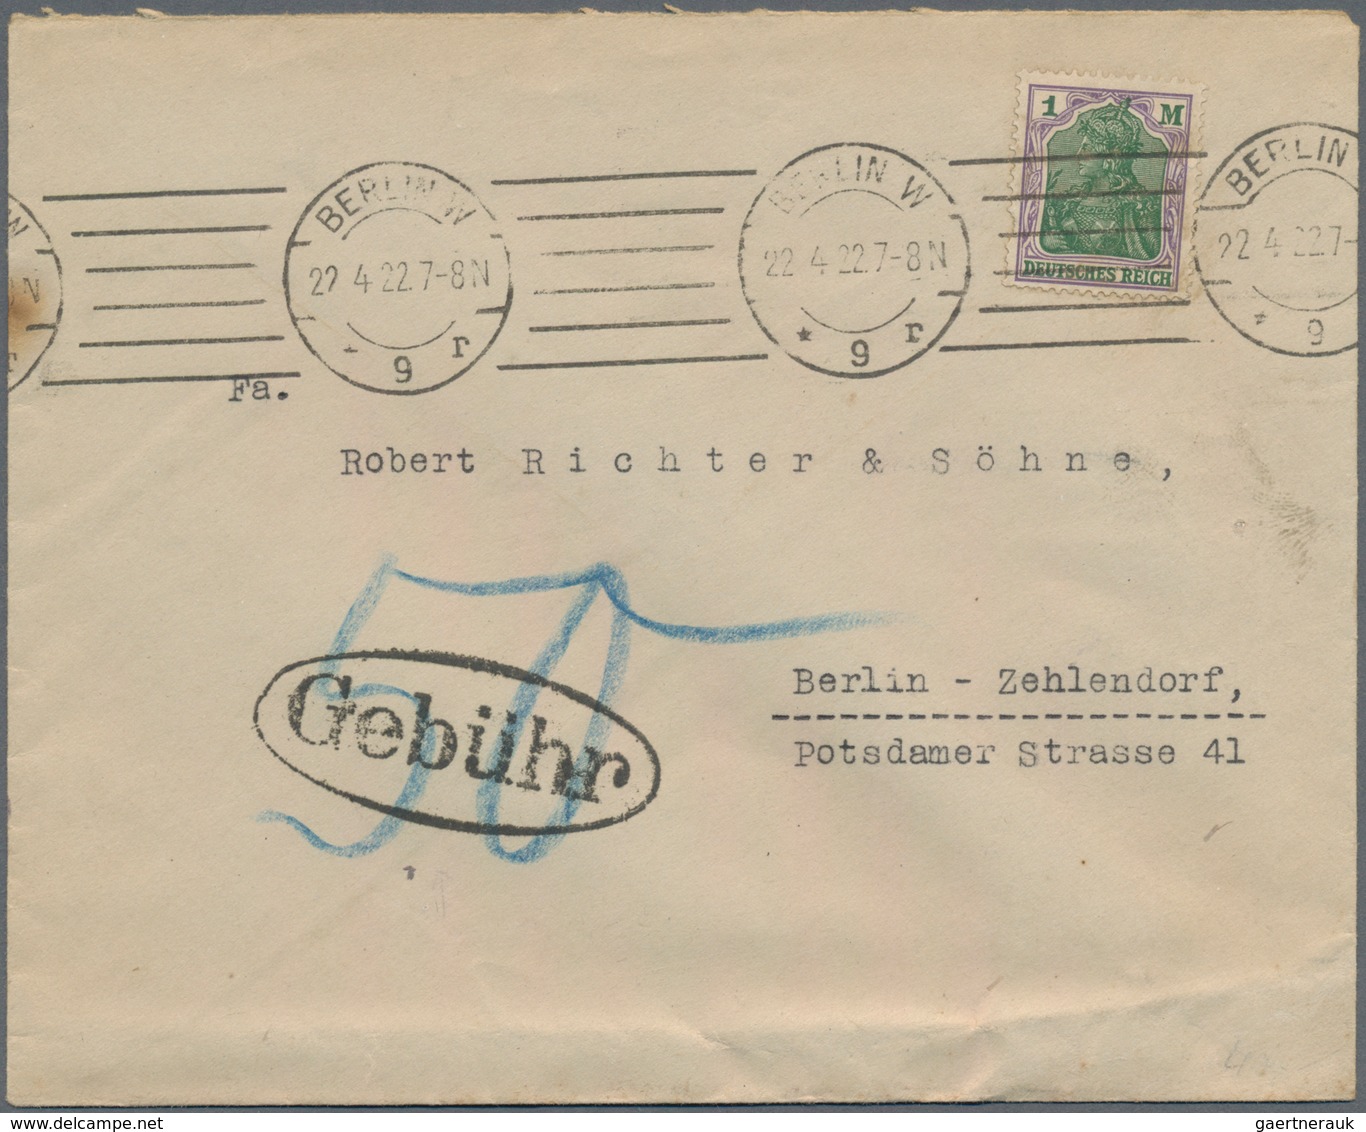 Deutsches Reich - Stempel: 1890/1944 ca., NACHPORTO, gehaltvolle Sammlung mit ca.150 Nachporto-Beleg